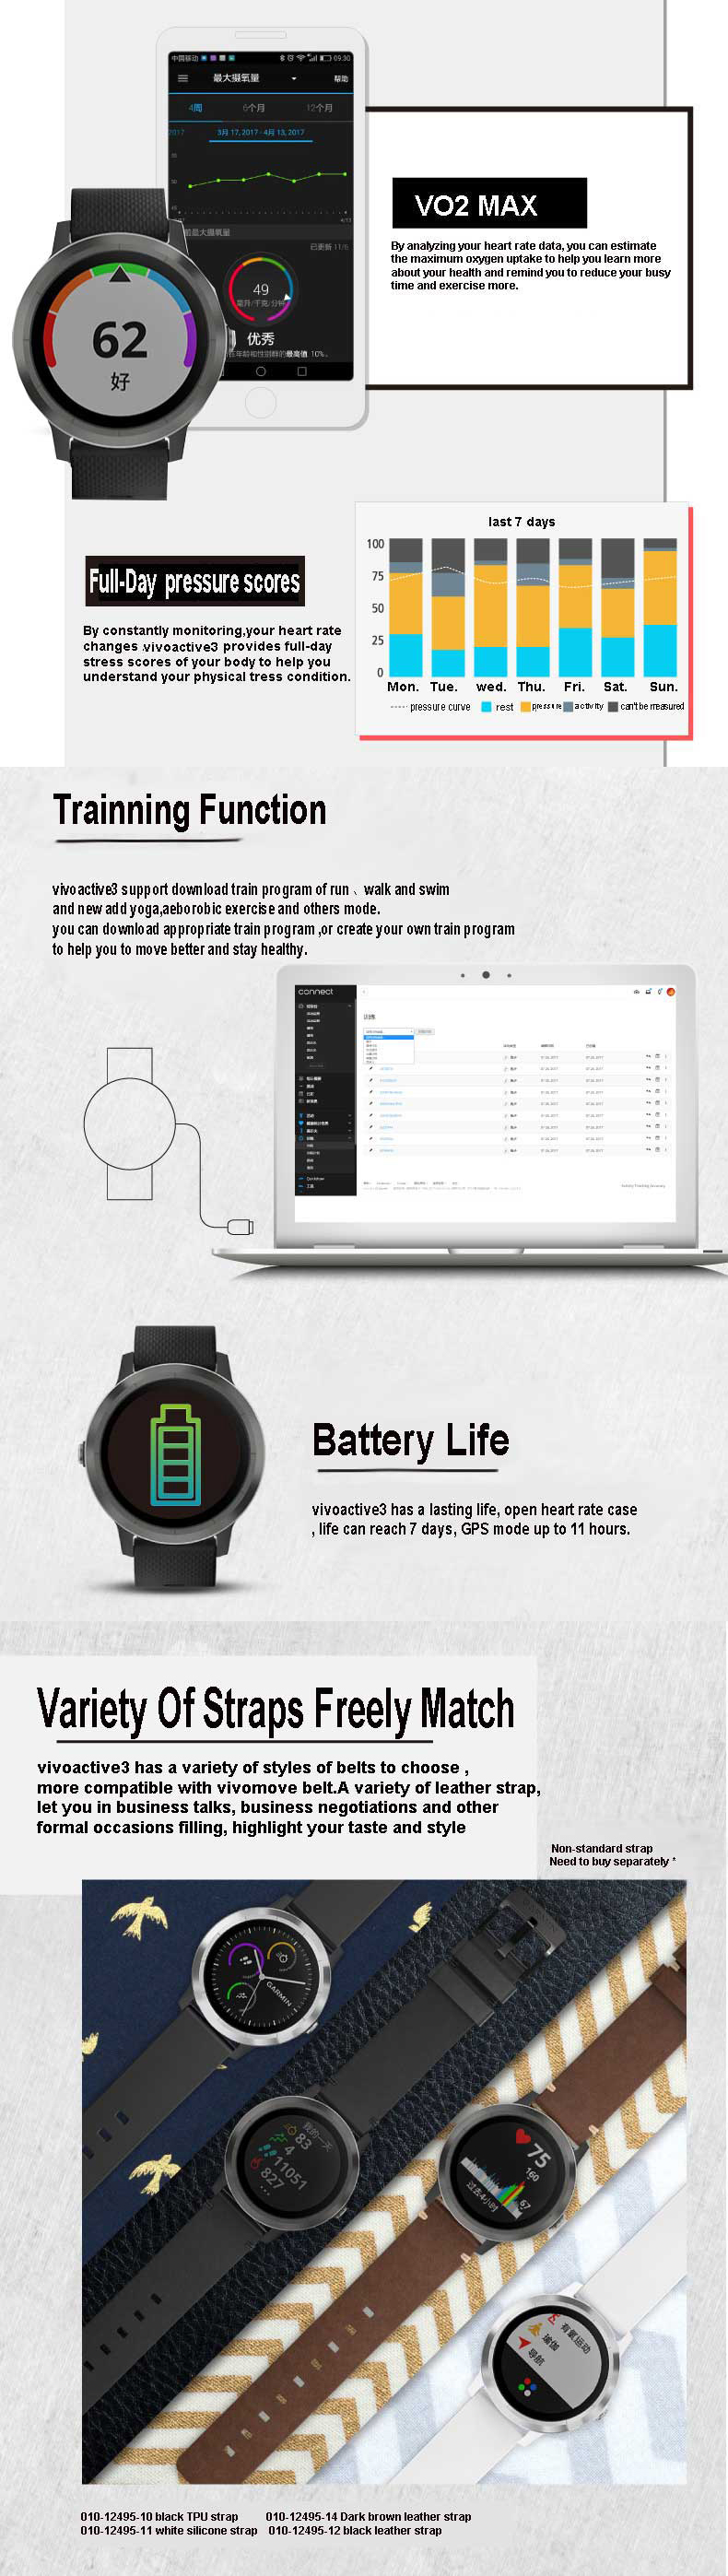 Garmin Vivoactive3 1.2Inch Touch Screen GPS+GLONASS Muti-sport Modes NFC Heart Rate Smart Watch 45